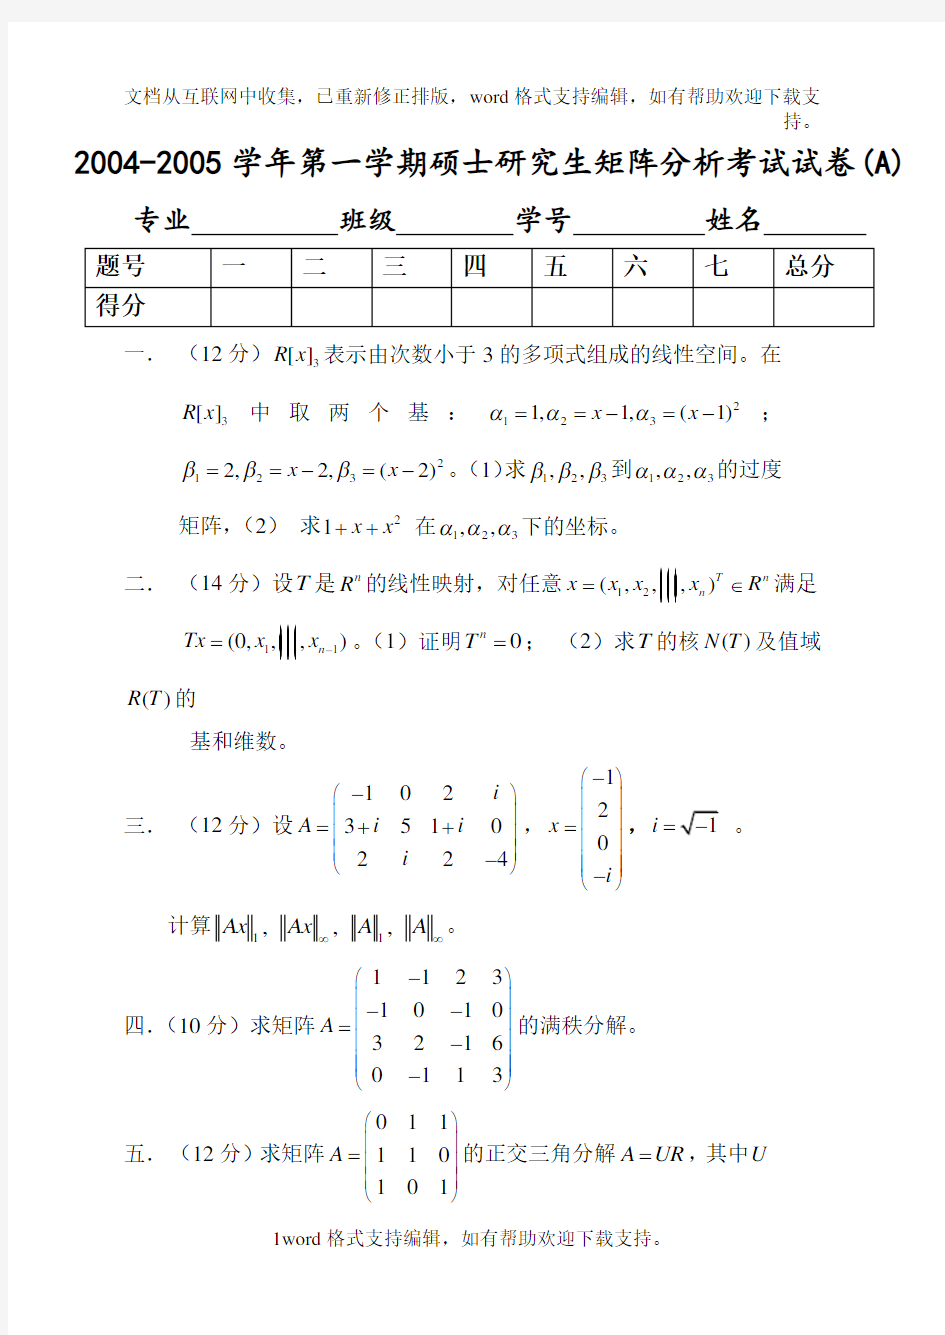 北京交通大学研究生矩阵分析期末考试试卷(7份)